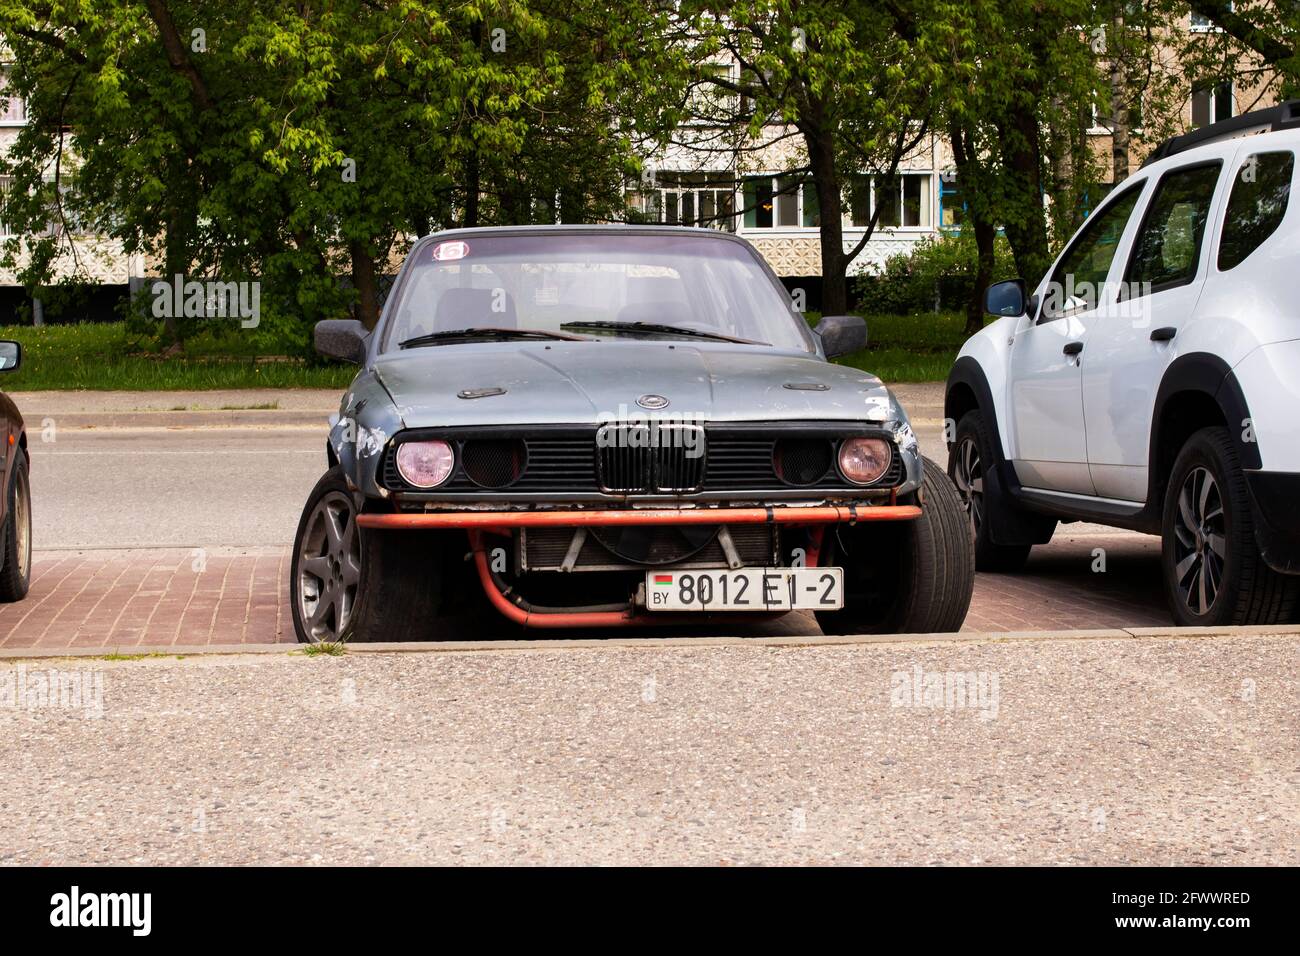 BIELORUSSIA, NOVOPOLOTSK - 24 MAGGIO 2021: Auto BMW nera con paraurti rotto primo piano Foto Stock